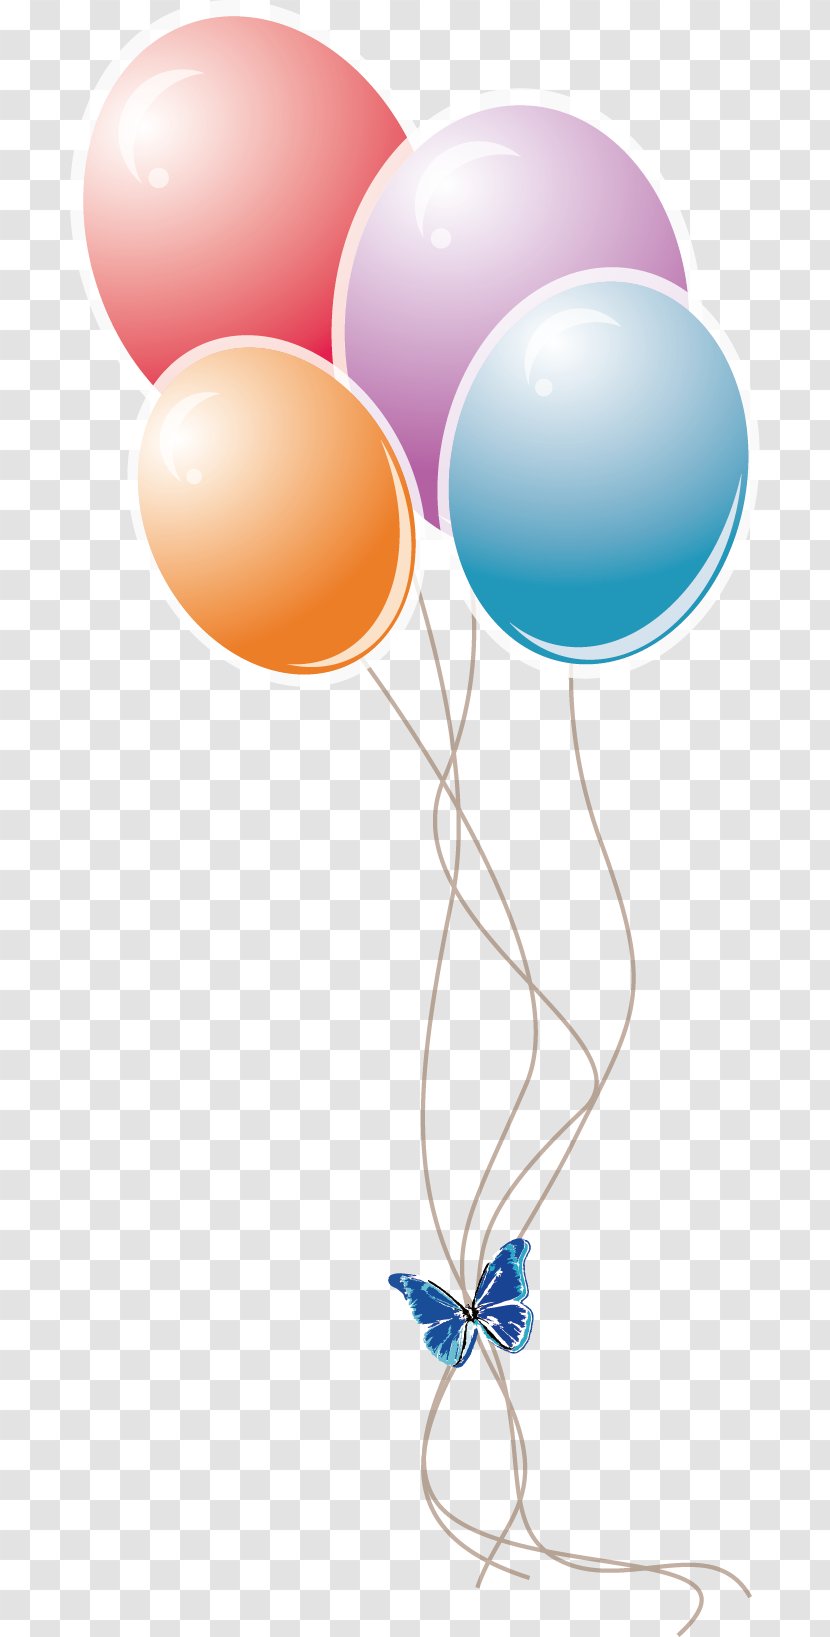 Balloon Euclidean Vector - Party Supply - Balloons Transparent PNG